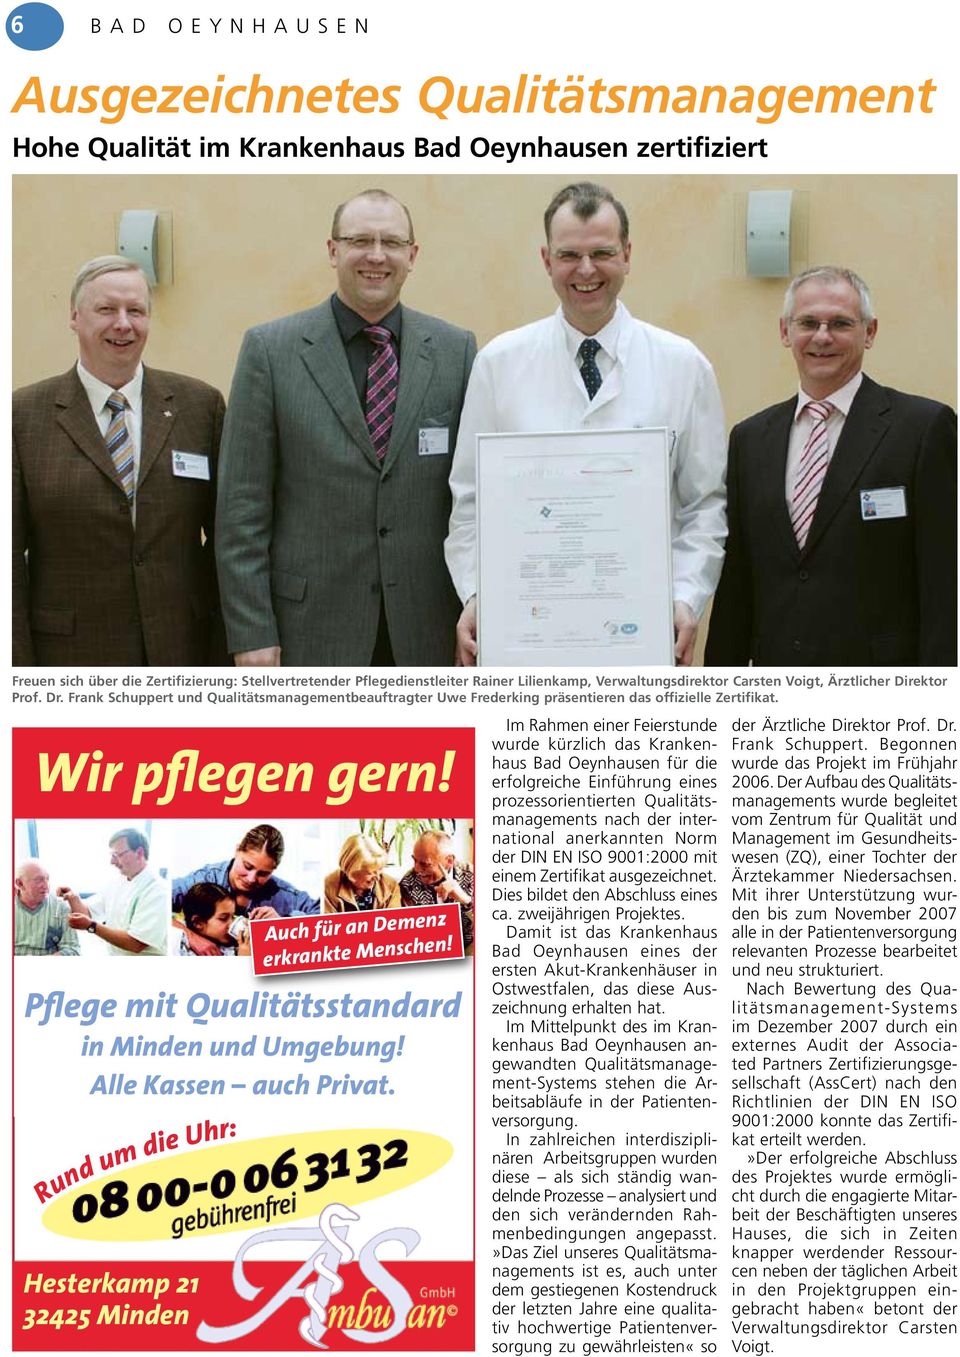 Im Rahmen einer Feierstunde wurde kürzlich das Krankenhaus Bad Oeynhausen für die erfolgreiche Einführung eines prozessorientierten Qualitätsmanagements nach der international anerkannten Norm der